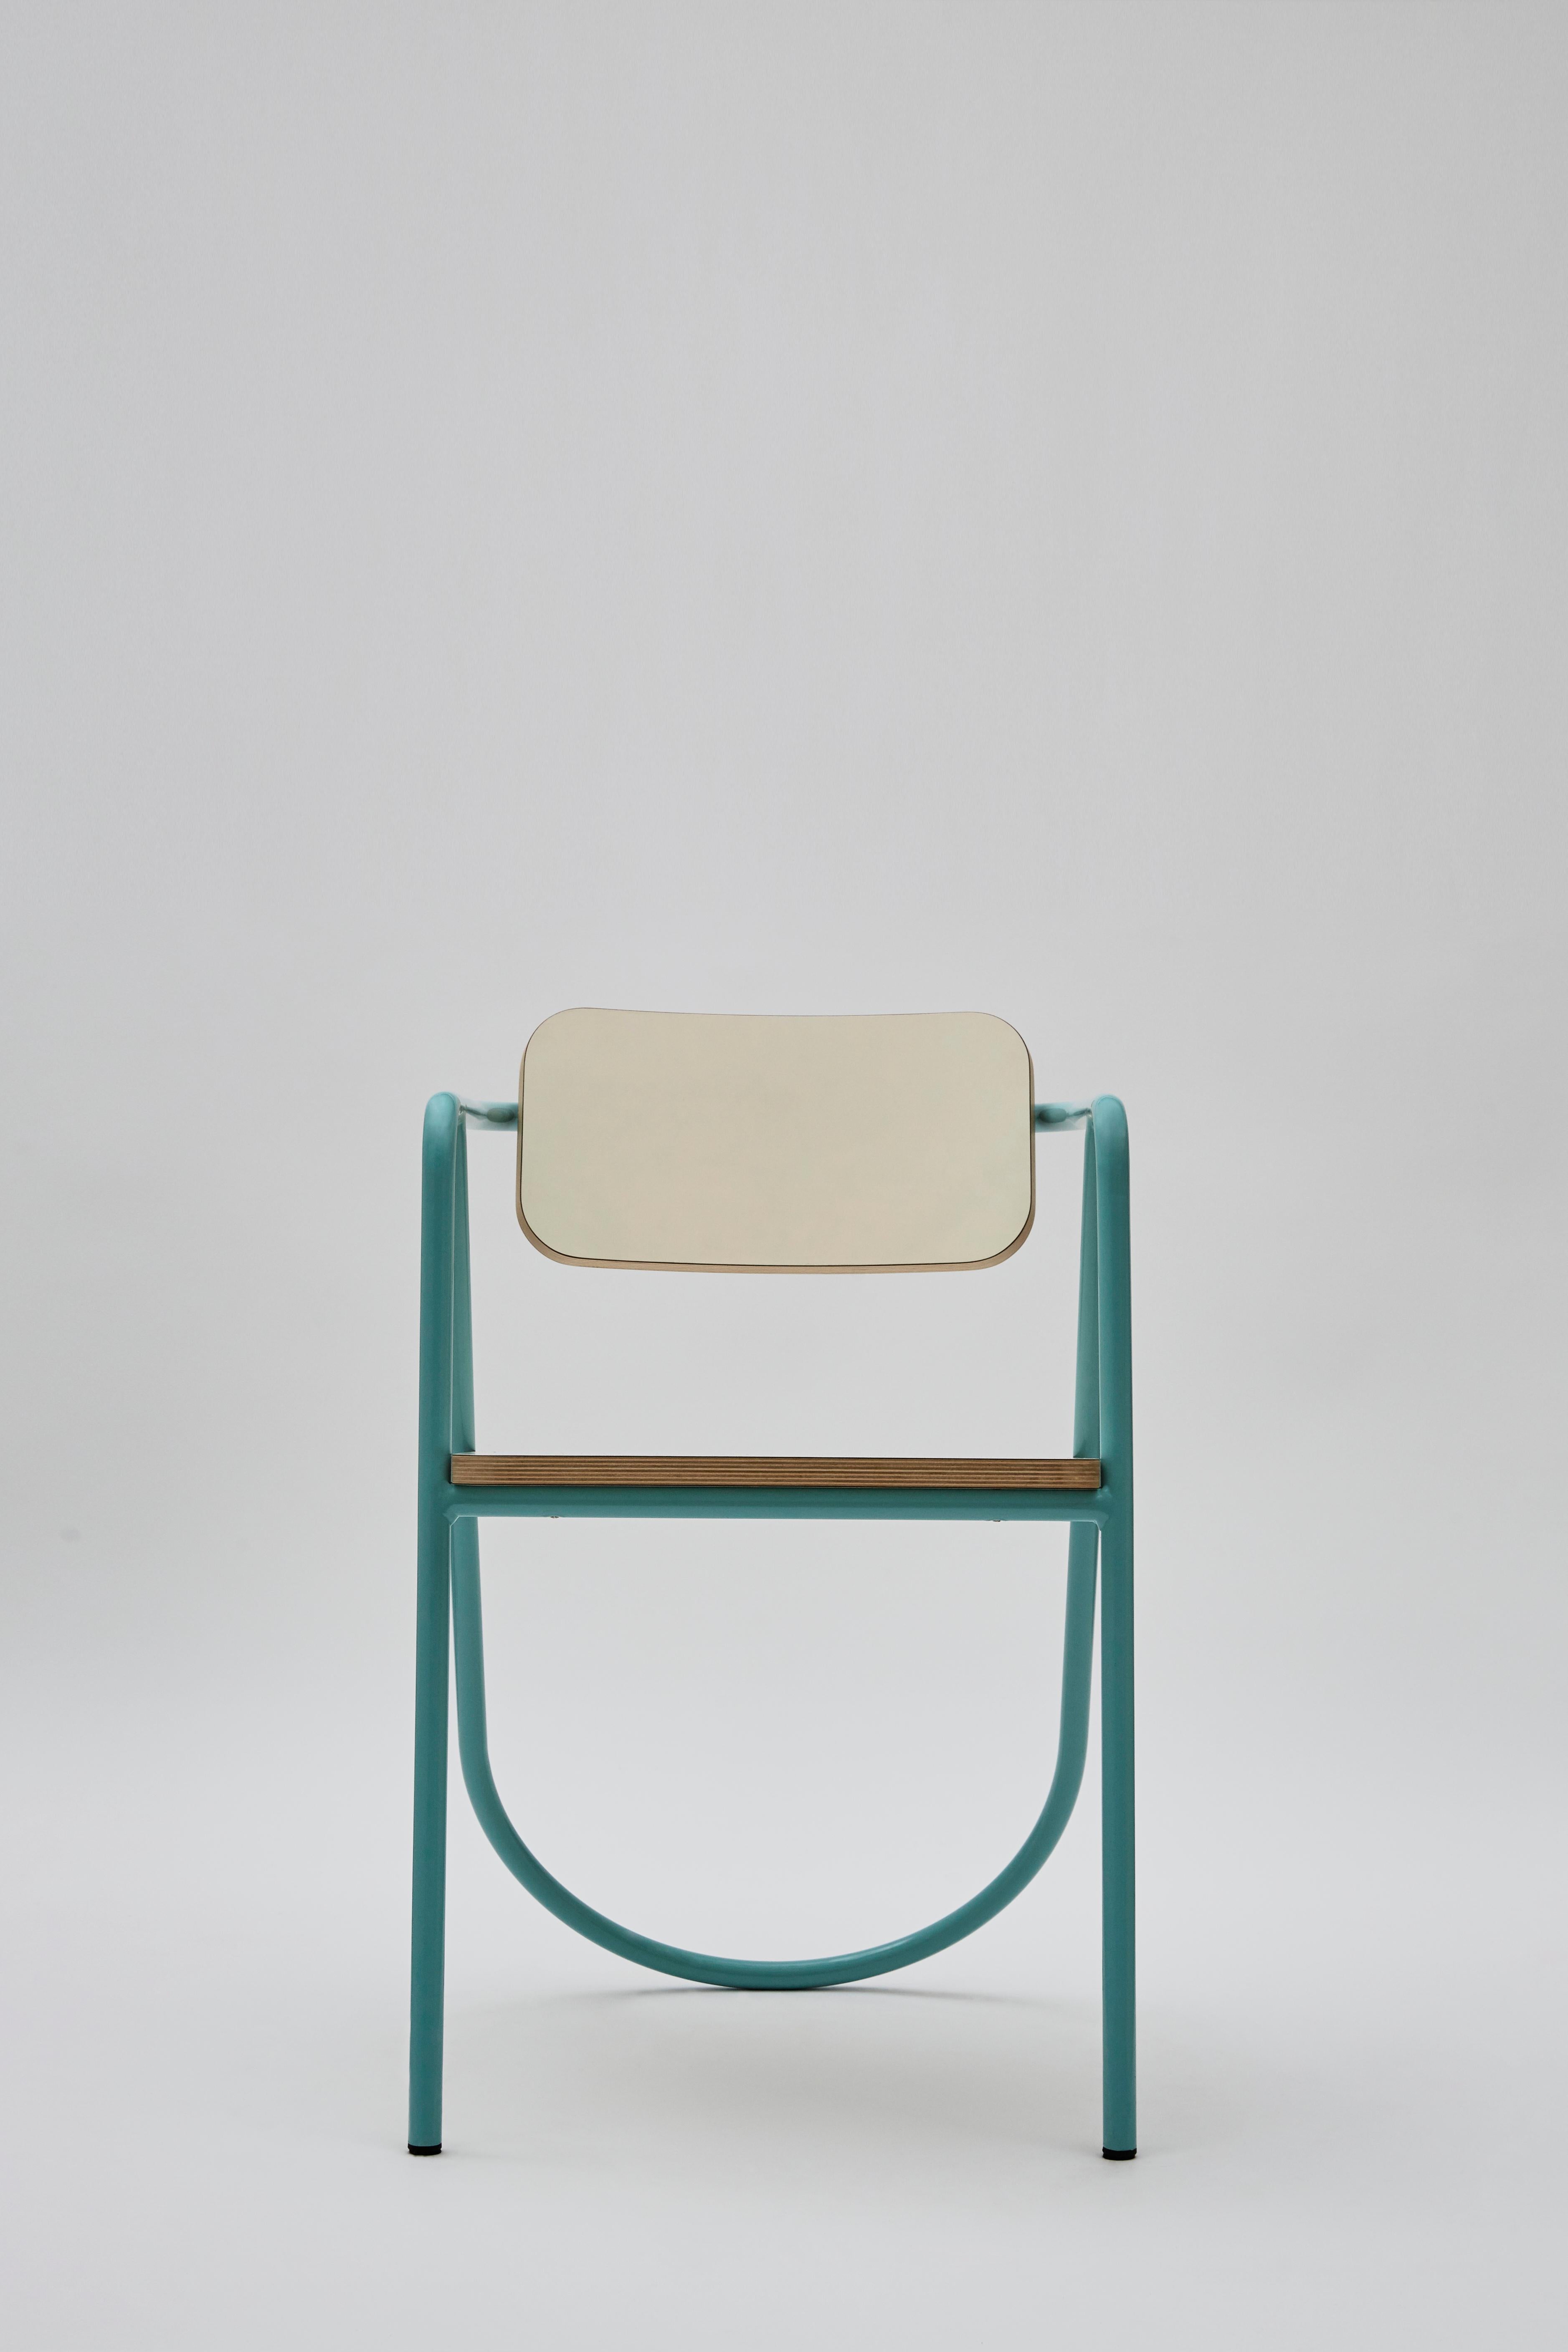 Cet intriguant fauteuil de la collection La Misciù fait écho à une inspiration vintage et révèle simultanément un fort attrait contemporain. L'utilisation courageuse des courbes pour le cadre cylindrique en acier se combine bien avec les coins